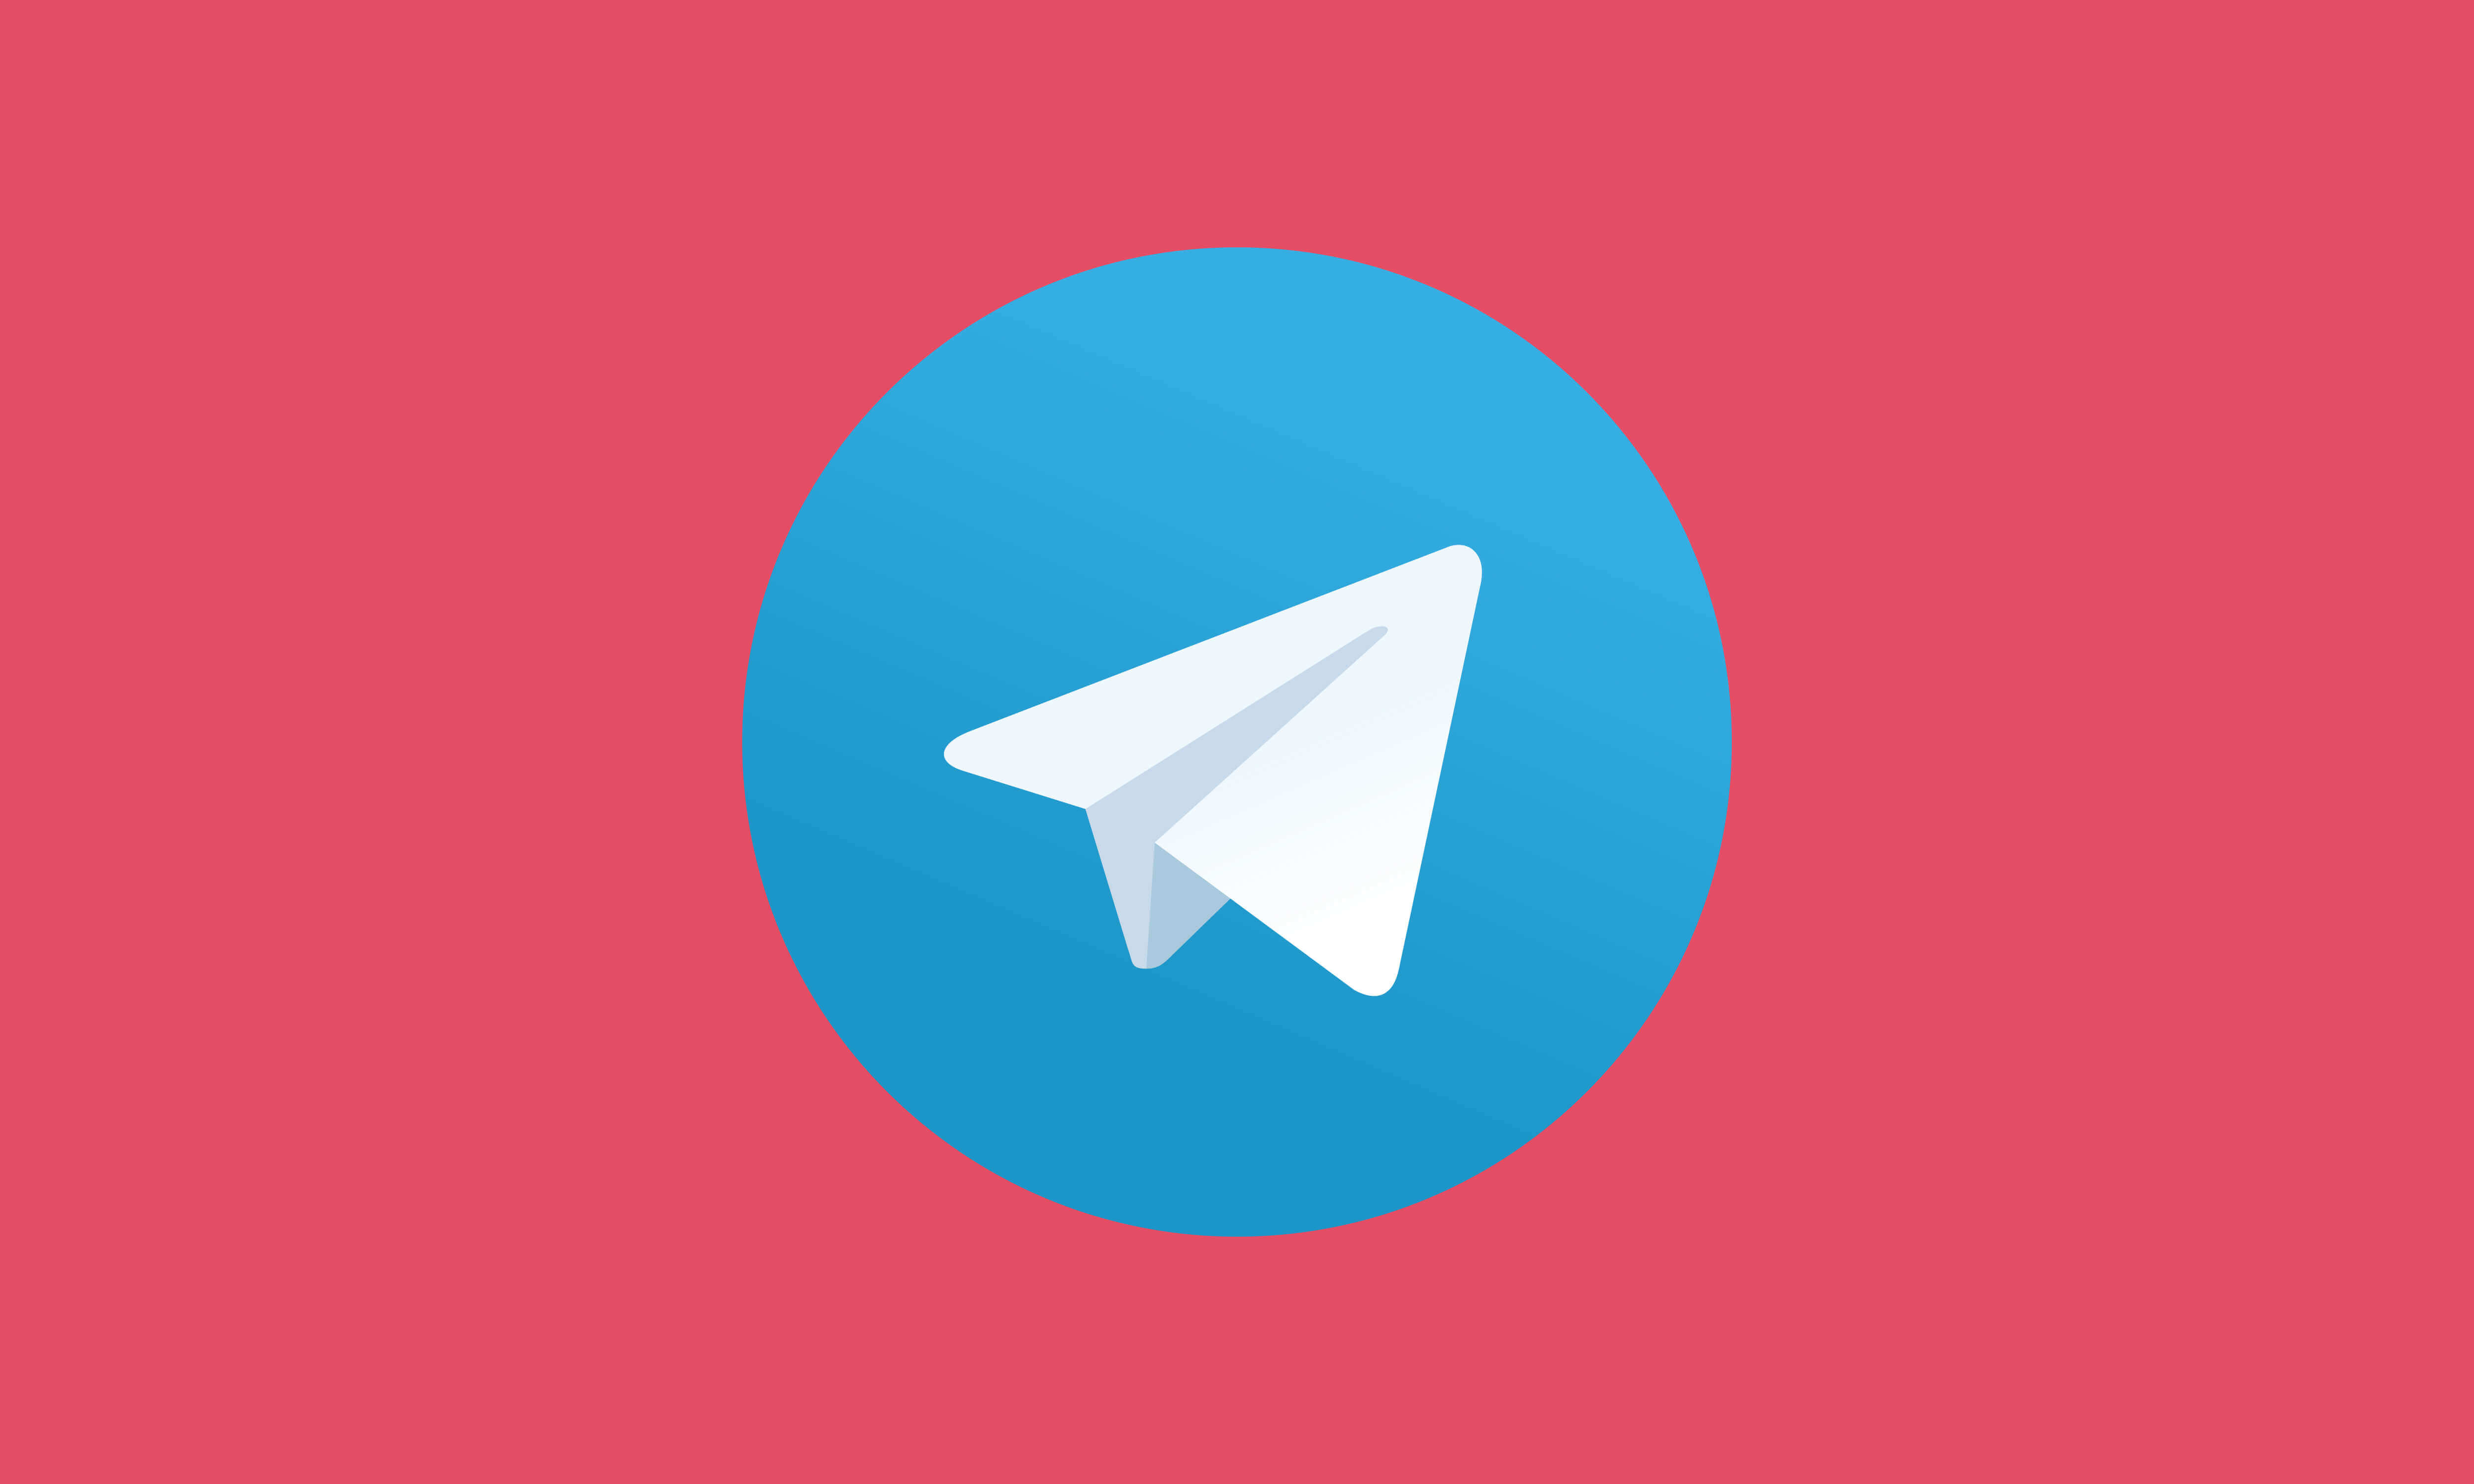 Telegram pictures. Телеграмм. Телеграмм мессенджер логотип. Логотип для телеграмм канала. Изображение телеграмм.